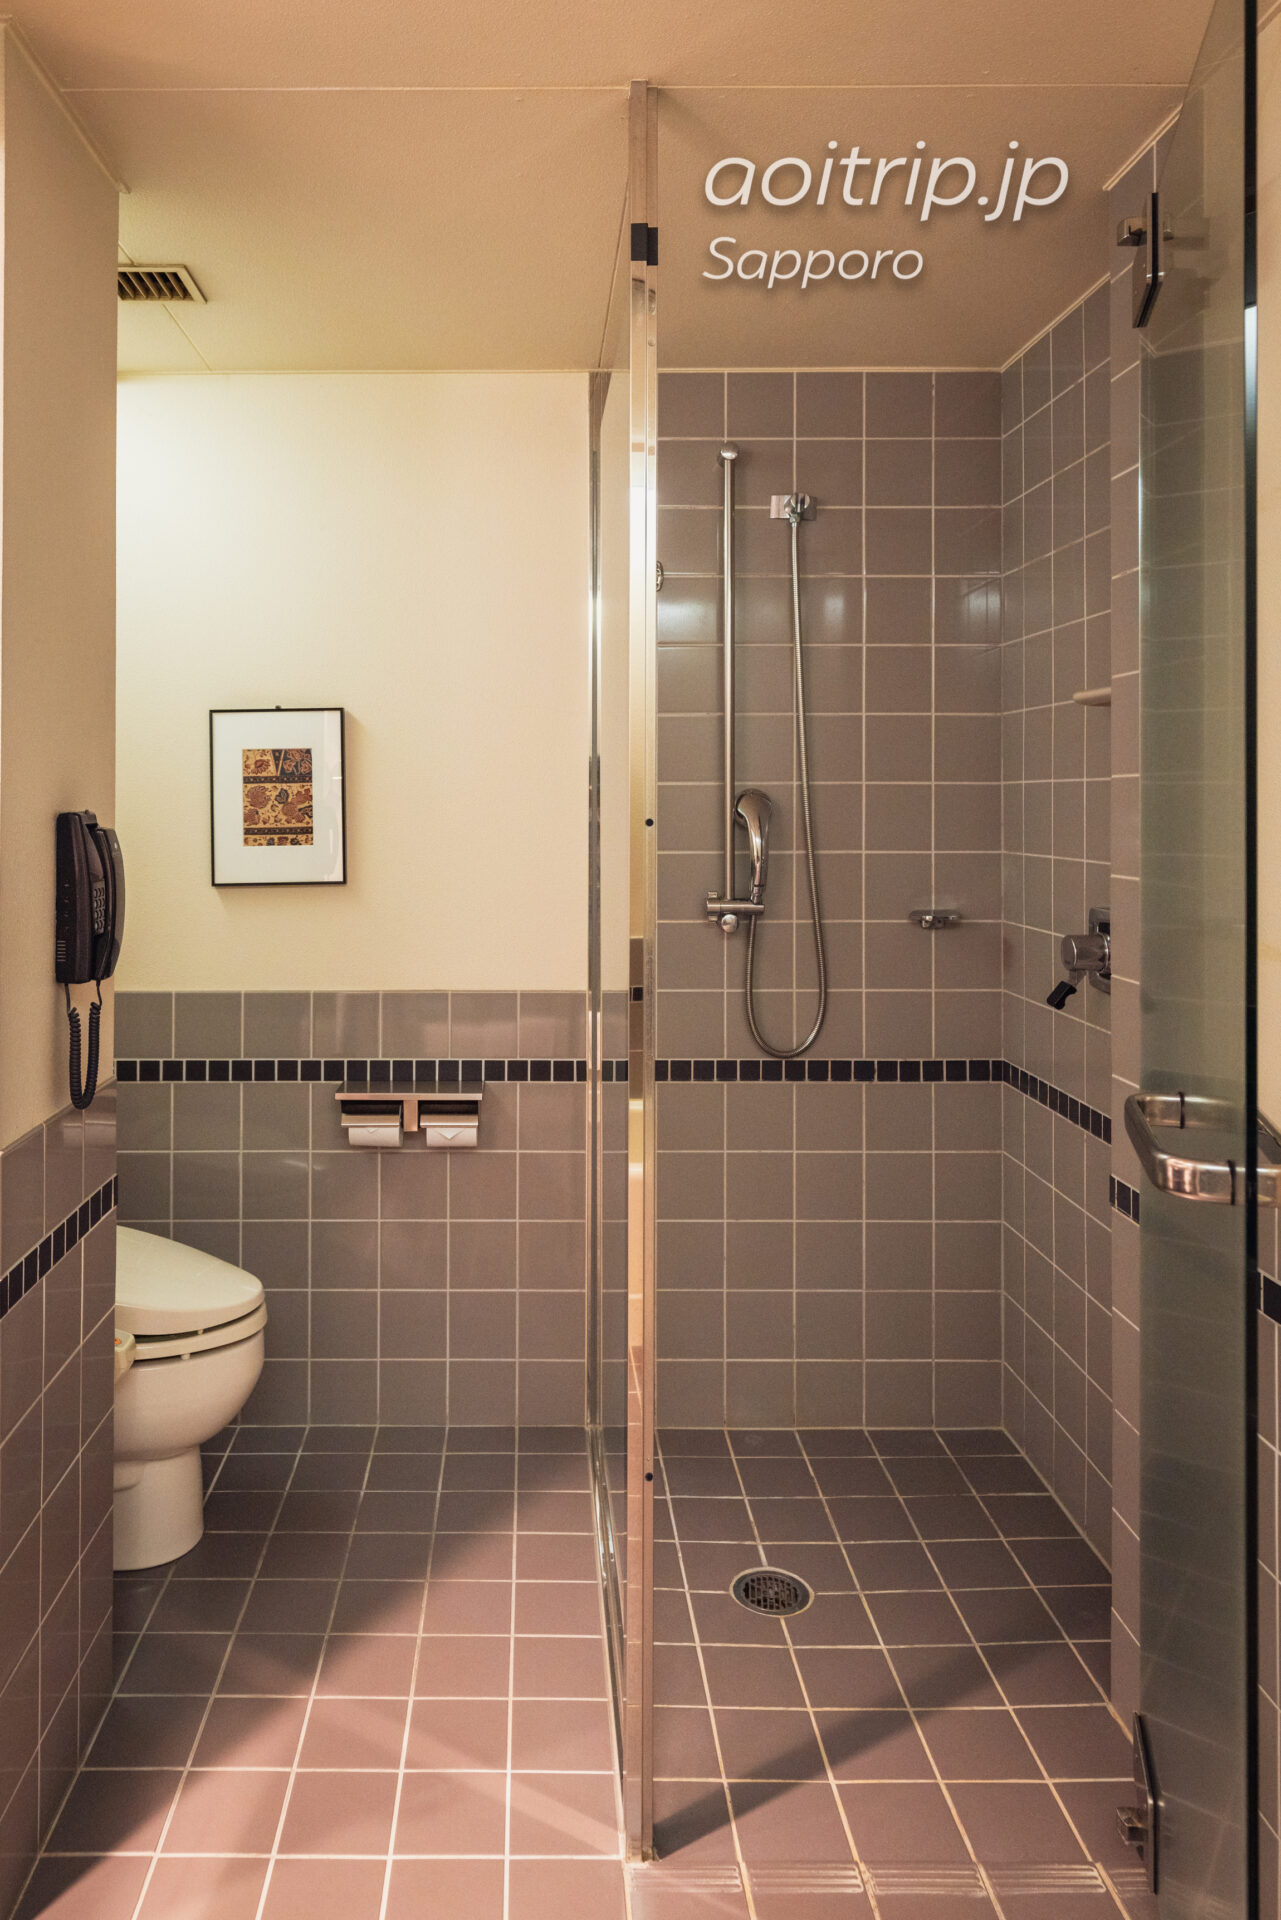 プレミアホテル TSUBAKI 札幌 バスルームのシャワーブースとトイレ